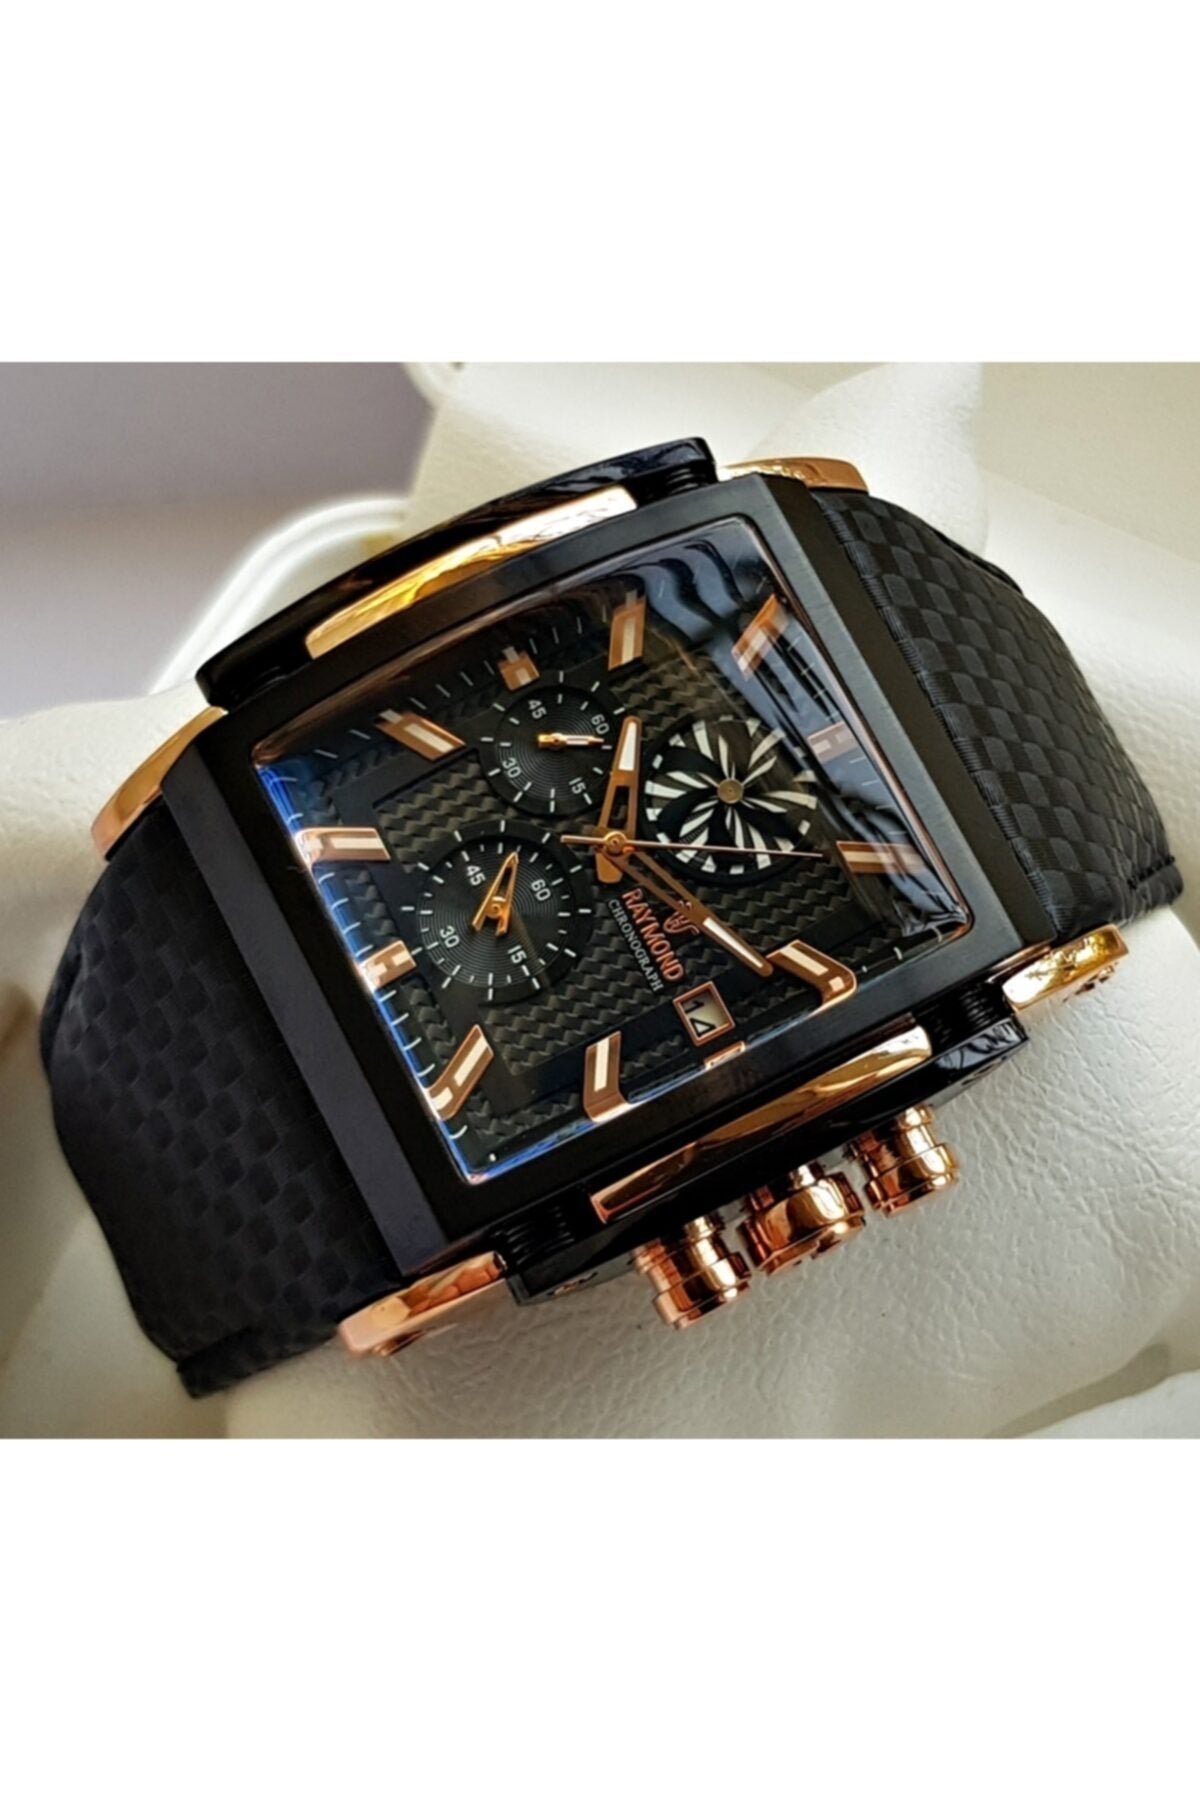 Swiss 8309 Black Men's Wristwatch